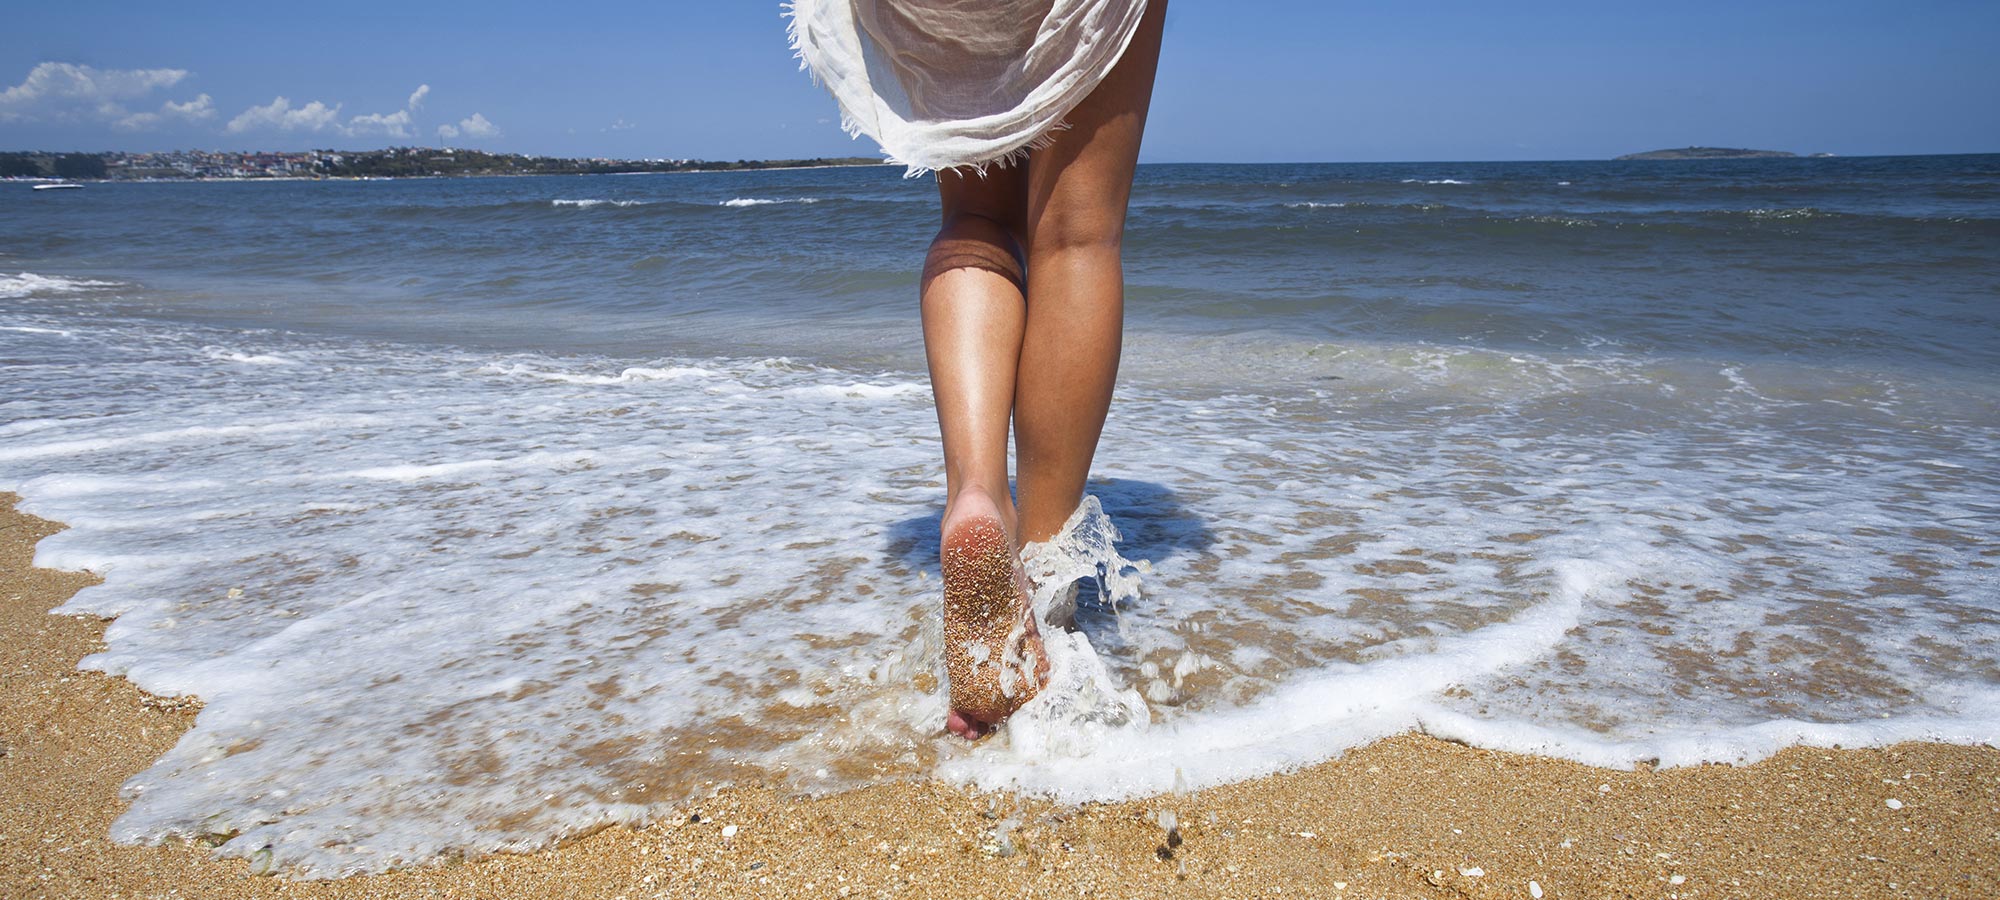 donna camminata in acqua bagnasciuga piedi nudi